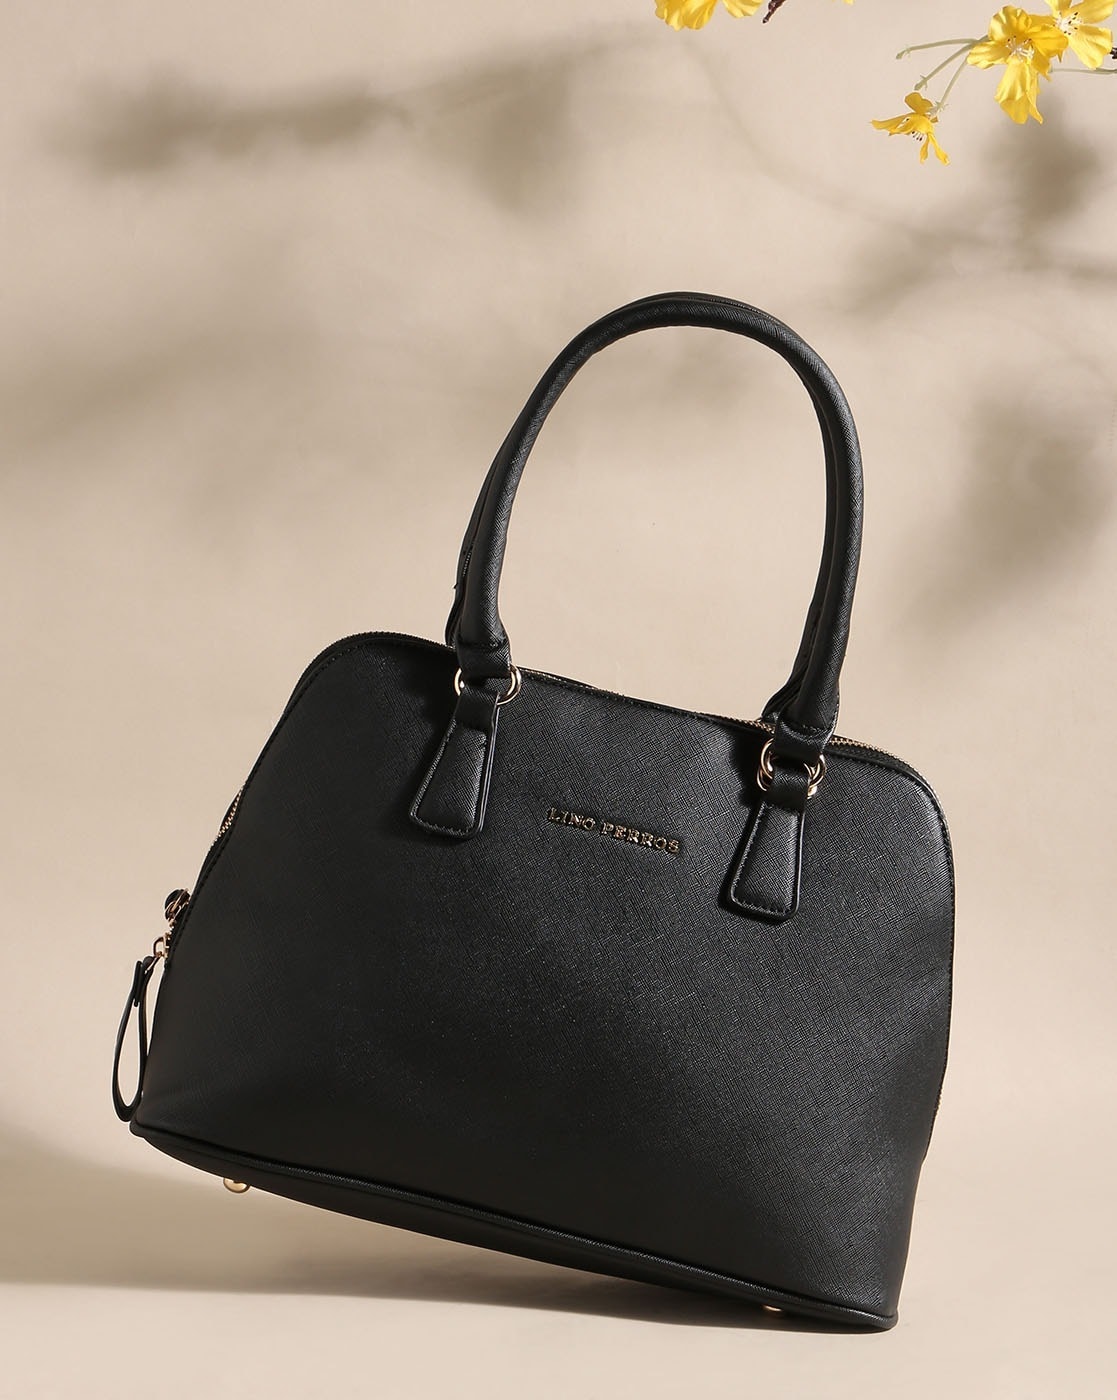 Lino Perros Bags : Buy Lino Perros Black Satchel Online